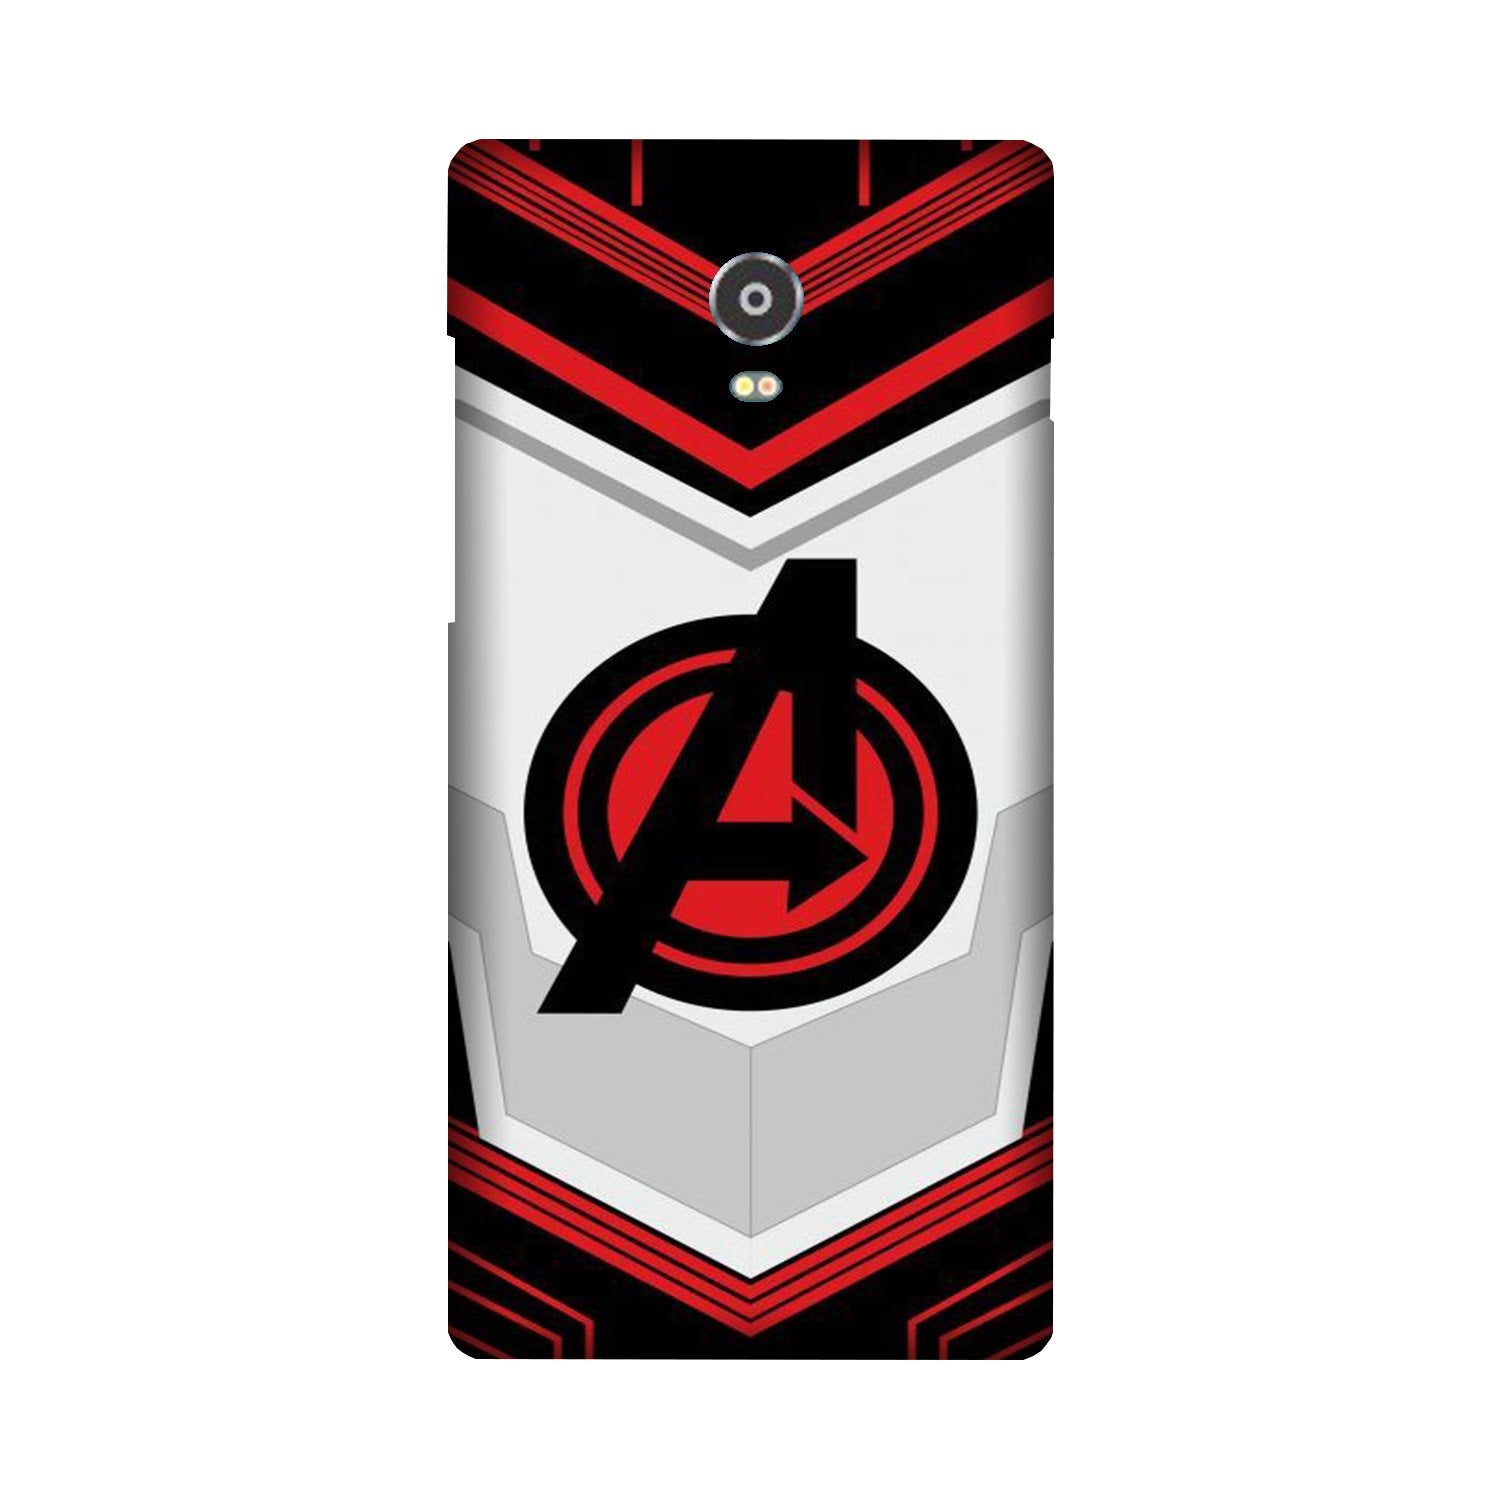 Avengers2 Case for Lenovo Vibe P1 (Design No. 255)